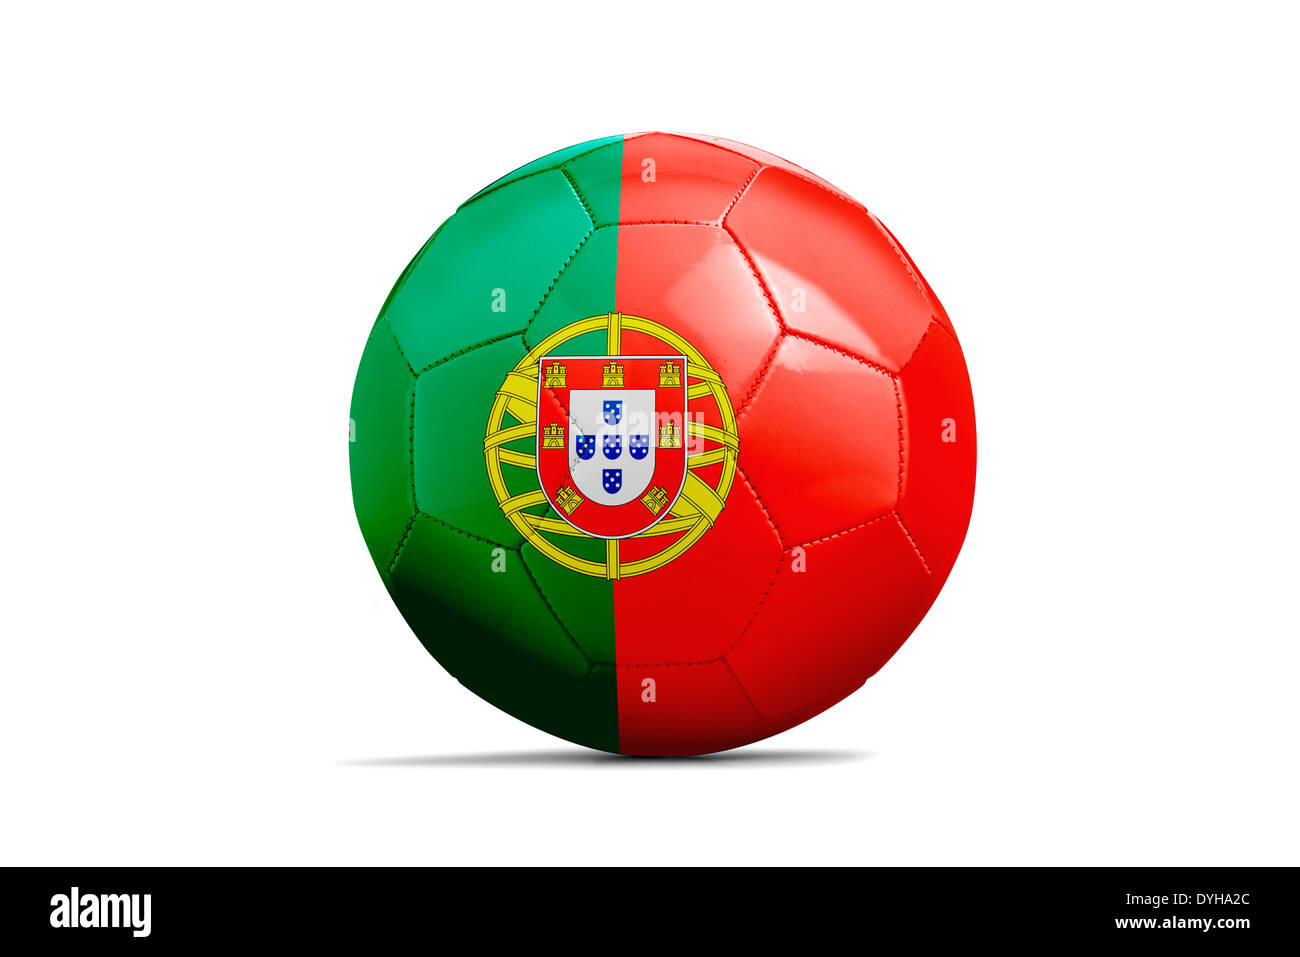 Des ballons de foot avec des équipes de football Brésil drapeaux, 2014. Le groupe G, le Portugal Banque D'Images